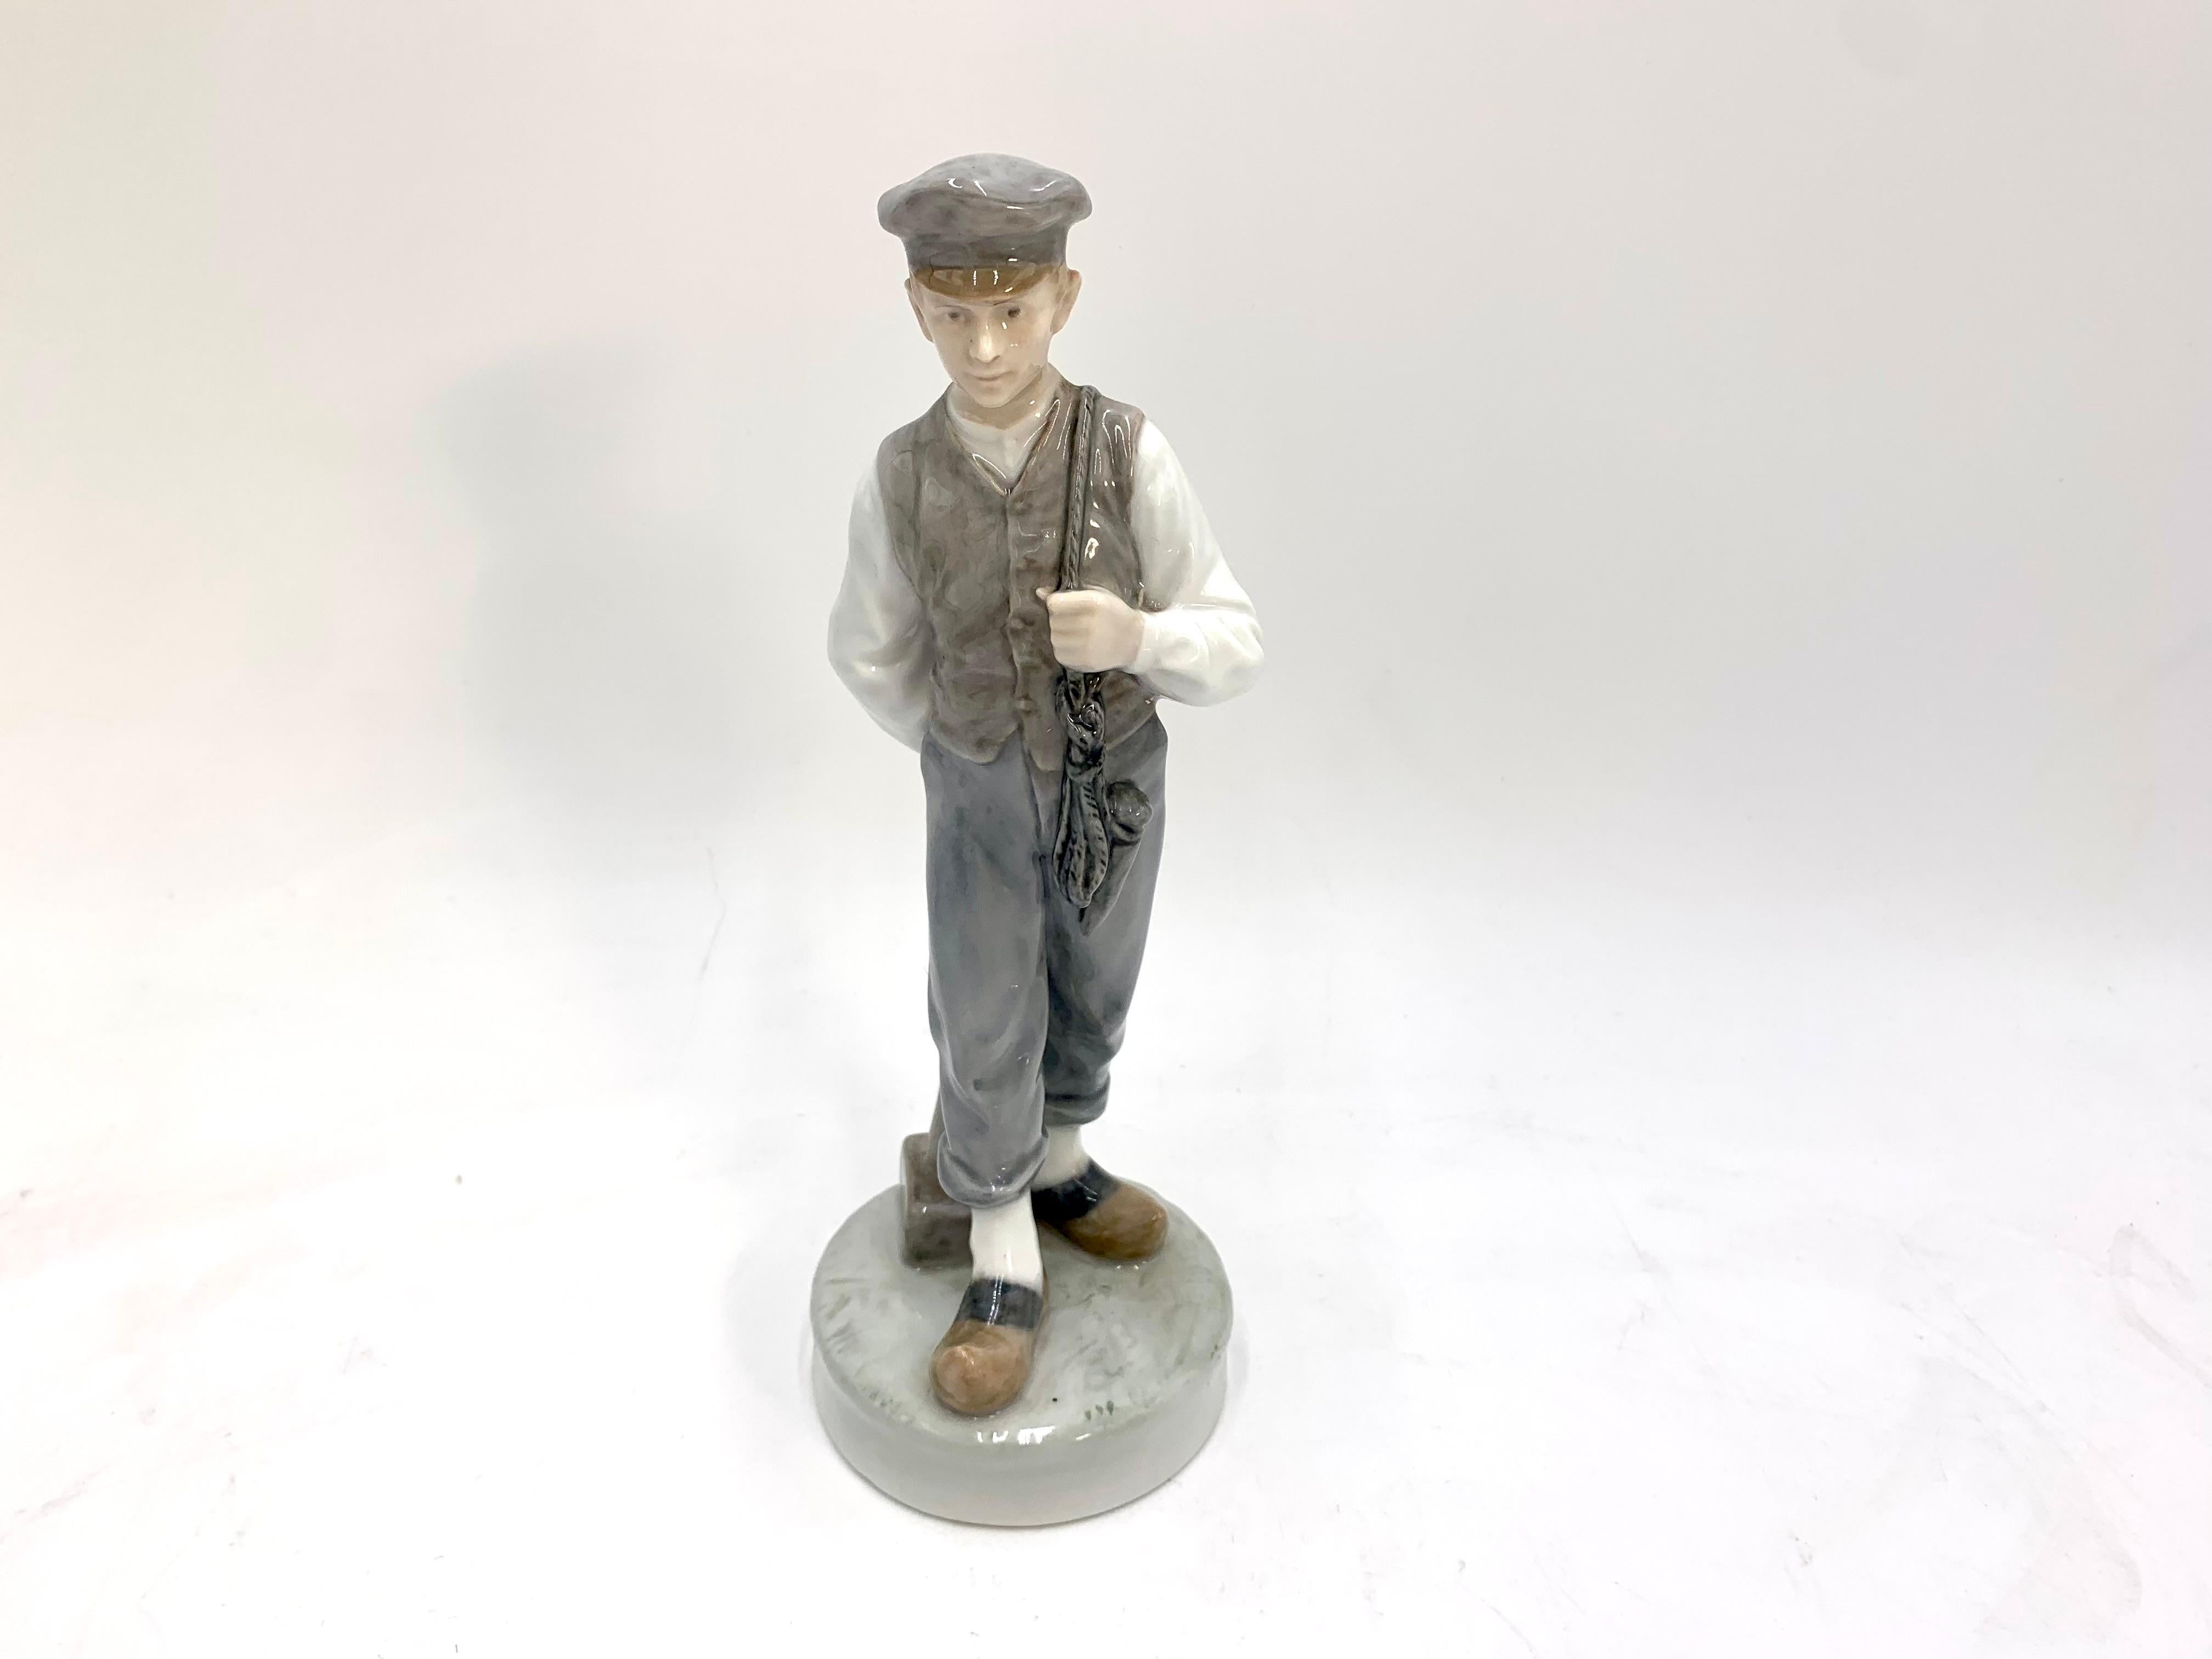 Figurine en porcelaine d'un garçon (berger) avec un marteau

Fabriqué au Danemark par la manufacture Royal Copenhagen

Fabriqué en 1945.

Numéro de modèle # 620

Très bon état, aucun dommage.

Dimensions : hauteur 22,5, largeur 7 cm,